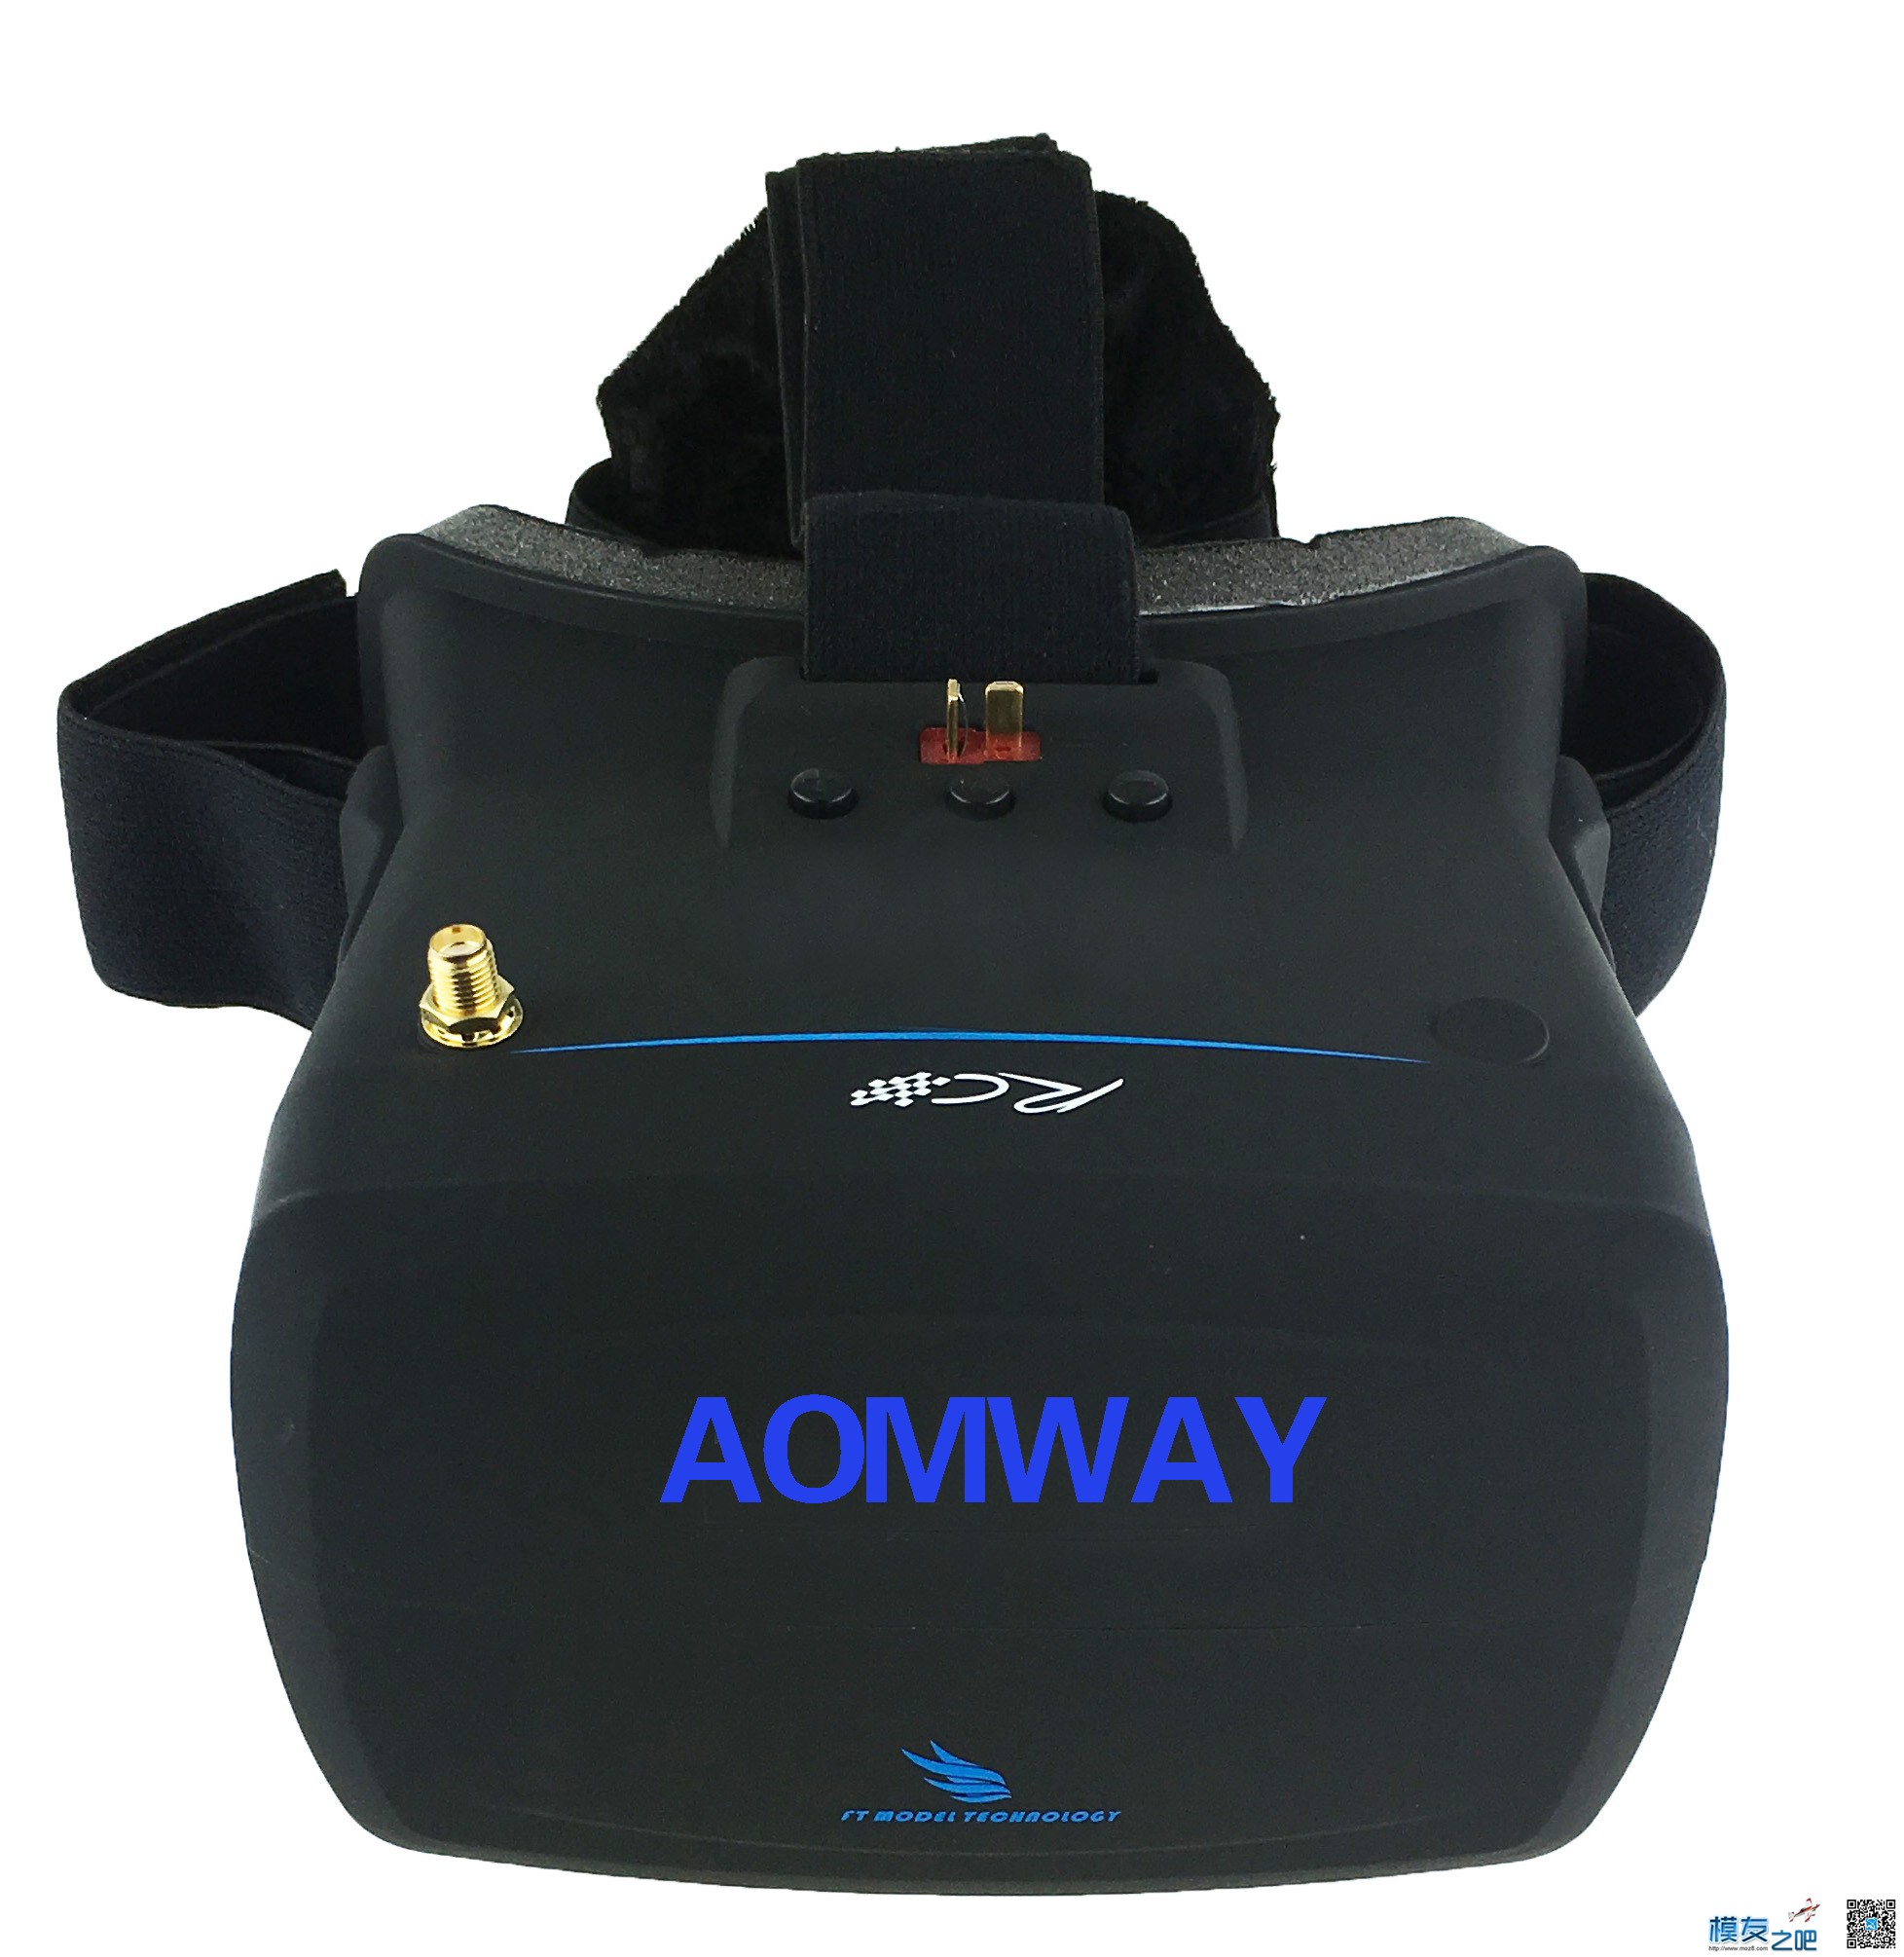 【模友之吧】AOMWAY VR Goggles V1 视频眼镜测试团购活动！ 电池,天线,图传,接收机,论坛活动 作者:飞天狼 4494 